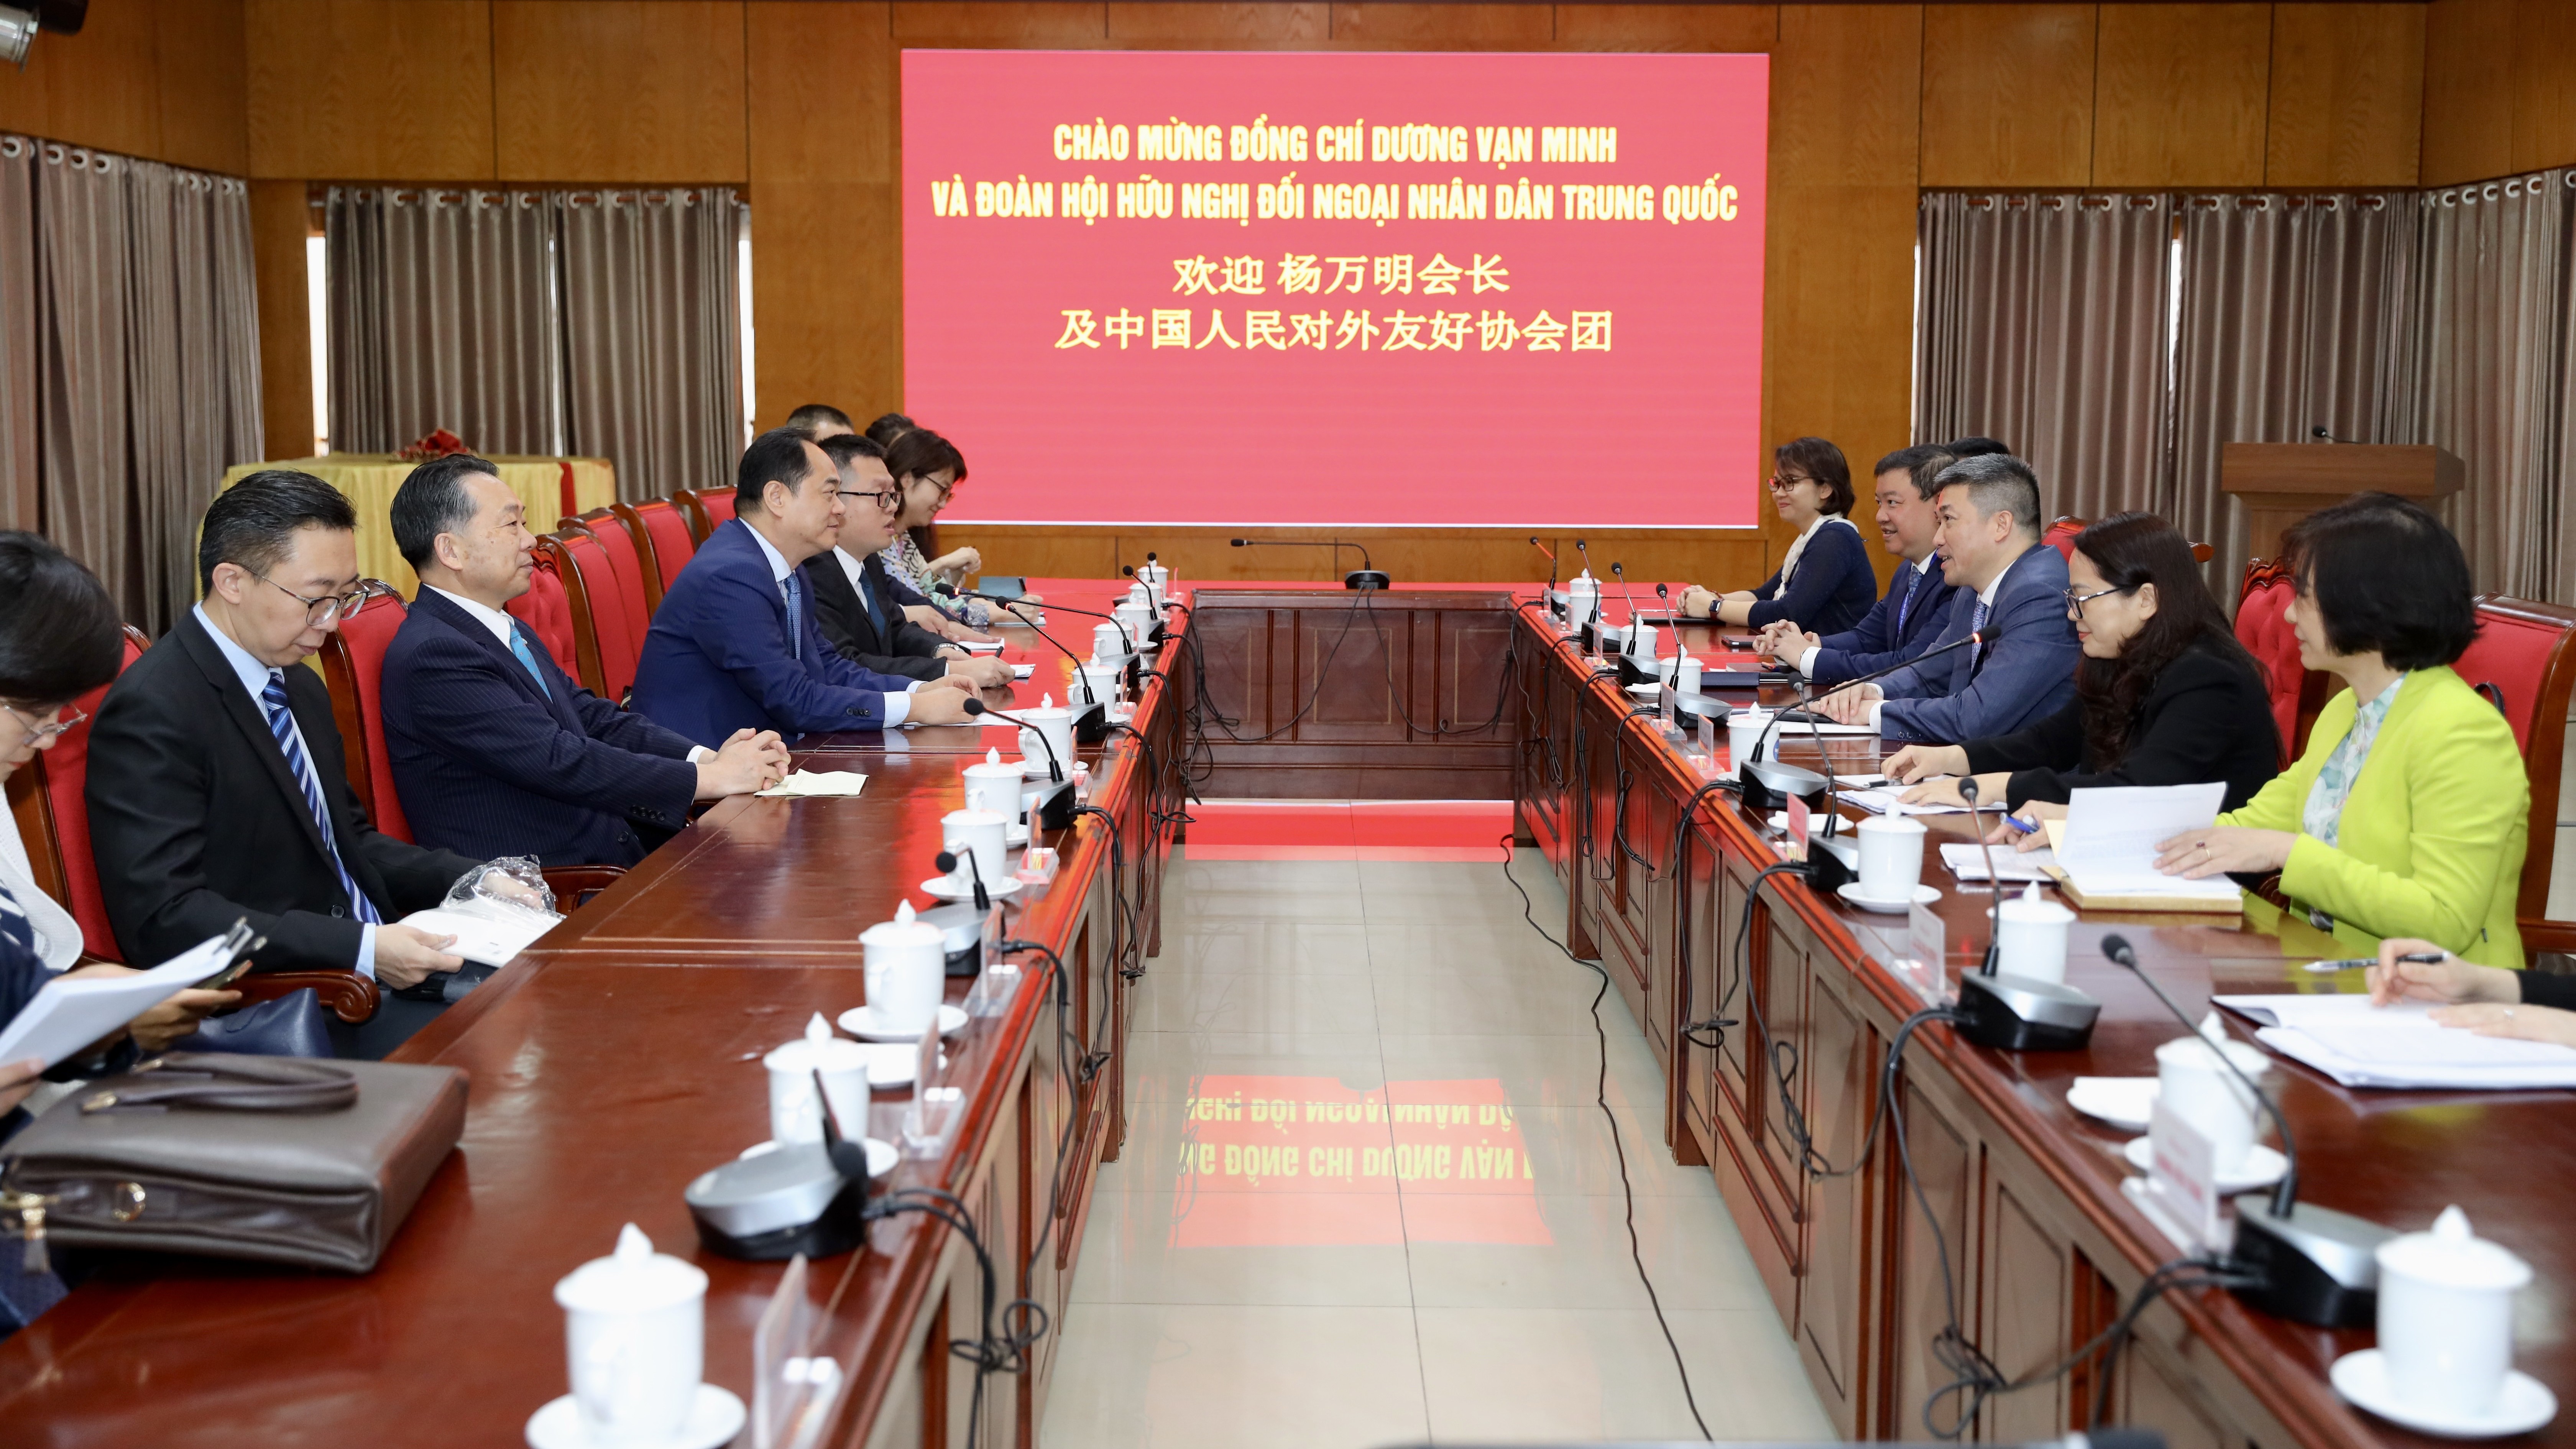 Chủ tịch VUFO Phan Anh Sơn tiếp đoàn Hội hữu nghị đối ngoại nhân dân Trung Quốc